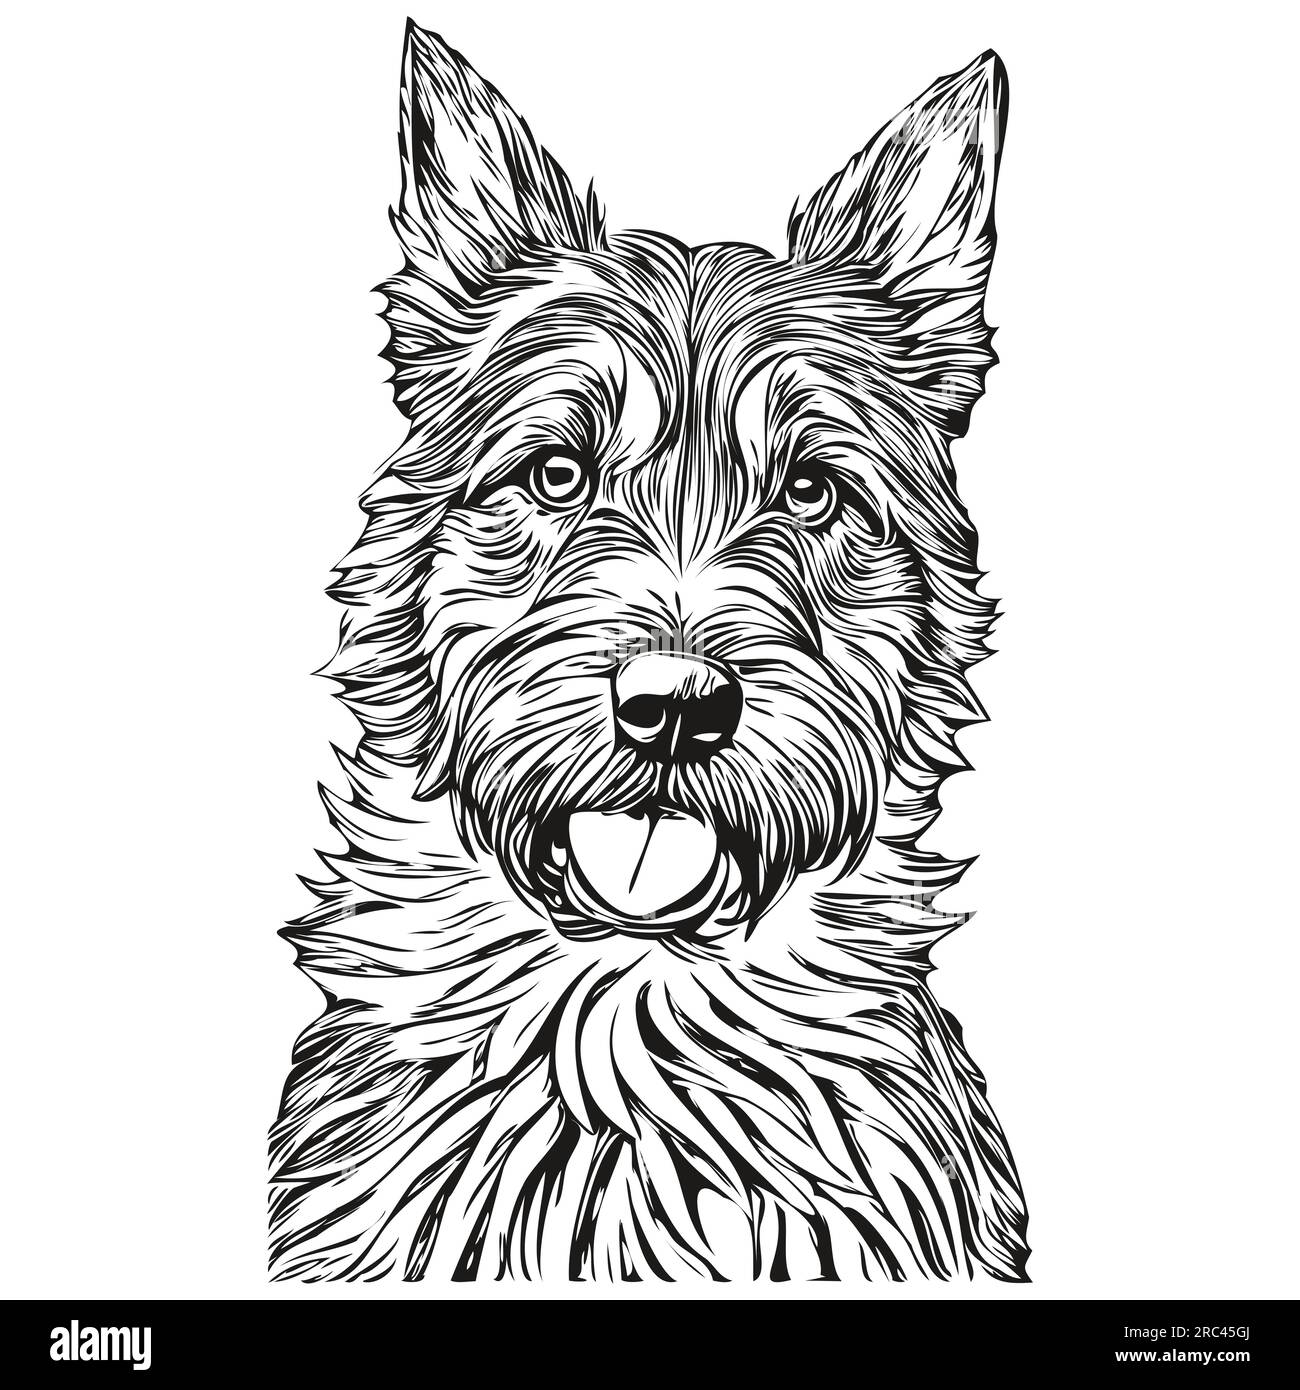 Border Terrier chien de race dessin au trait, clip art animal dessin à la main vecteur noir et blanc animal de compagnie réaliste de race Illustration de Vecteur